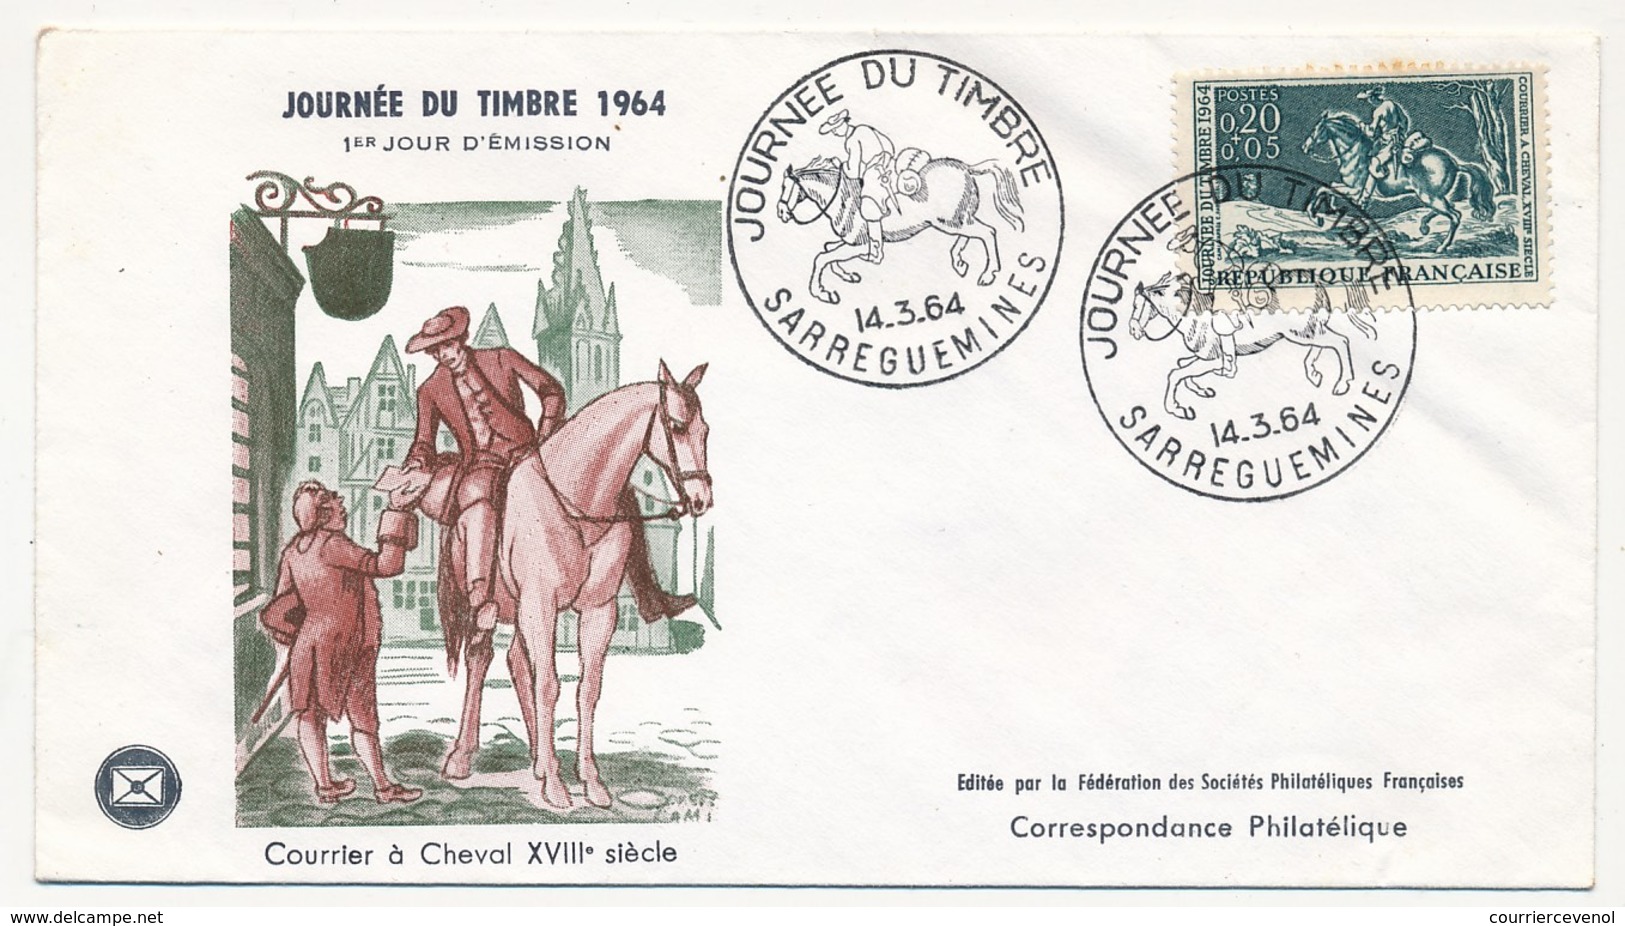 FRANCE - Enveloppe FDC - Journée Du Timbre 1964 (Courrier à Cheval XVIIIeme Siècle) - SARREGUEMINES 14.3.1964 - Tag Der Briefmarke